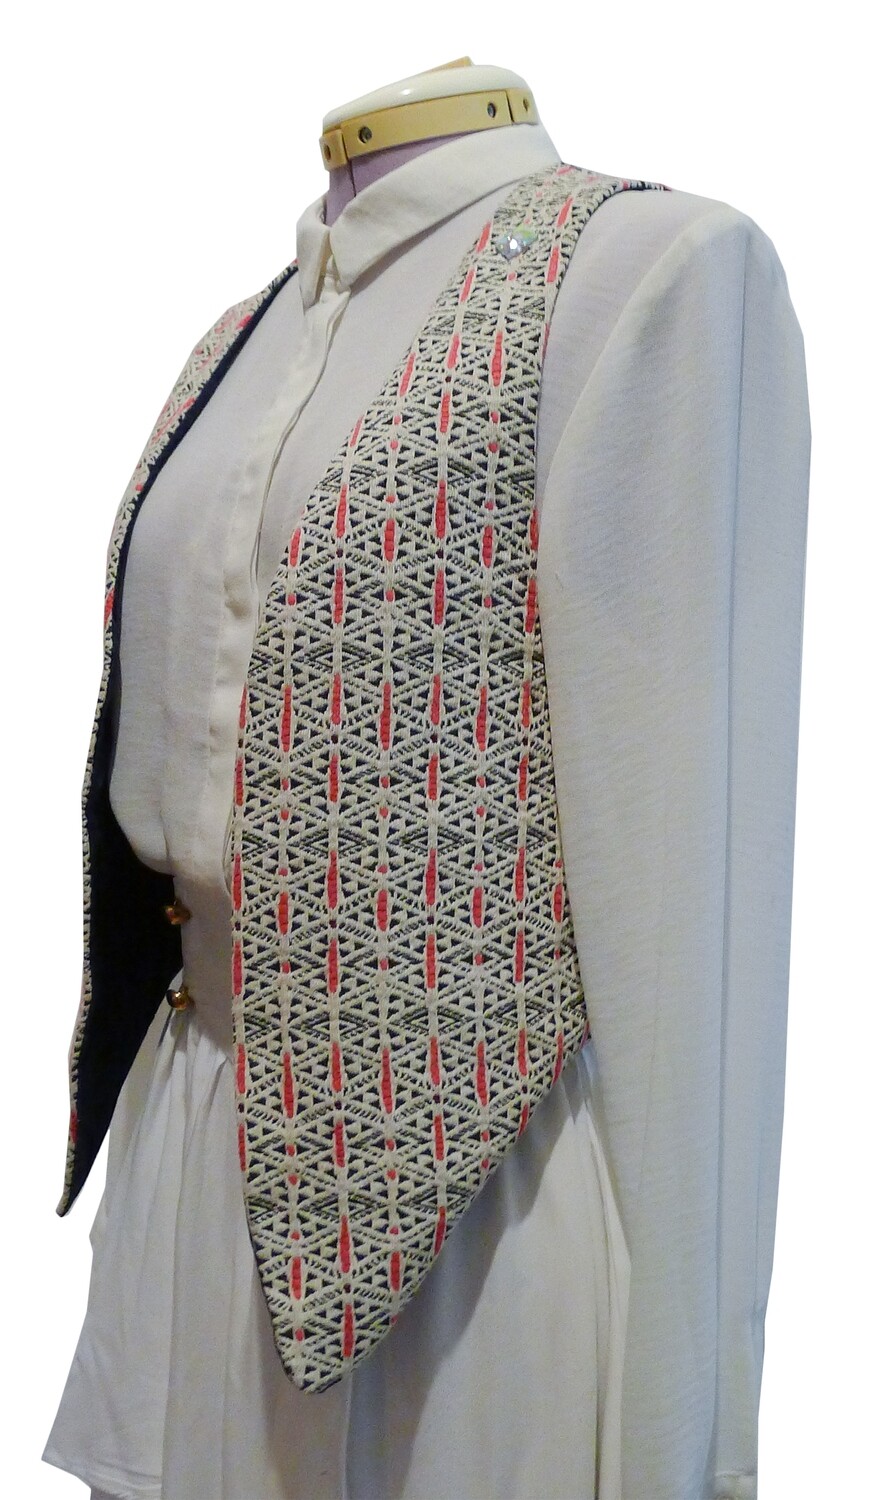 YAKAYA Damen Weste "Jaya" mit einem schönem gewebten Ethno-Muster - jedes Teil ein Unikat - Ethno, Hippie, Boho - Style